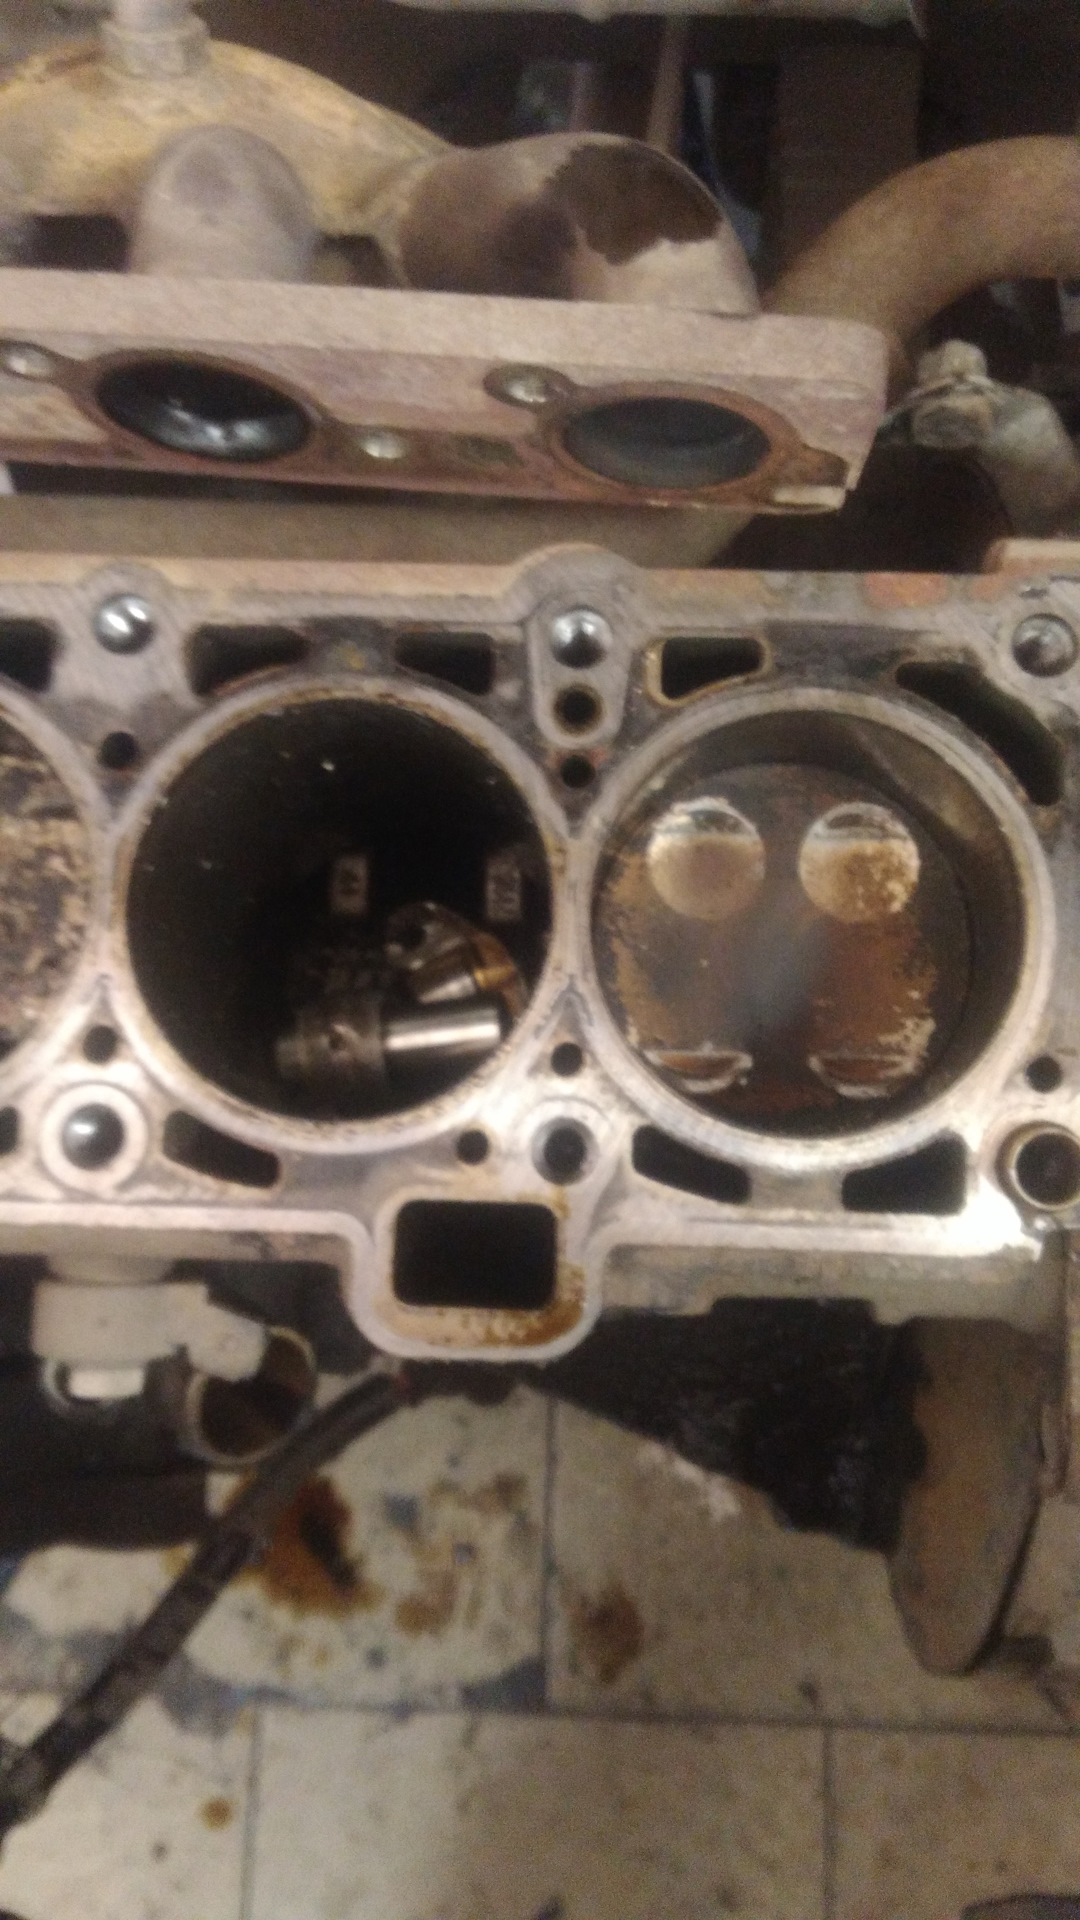 11186 двигатель гнет ли. Двигатель Гранта 8 клапанов 11186 гнет ли клапана. Погнуло клапана Гранта 8 клапанная. Загнуло клапана Приора 16 клапанов. Погнуло клапана Гранта 8 клап.